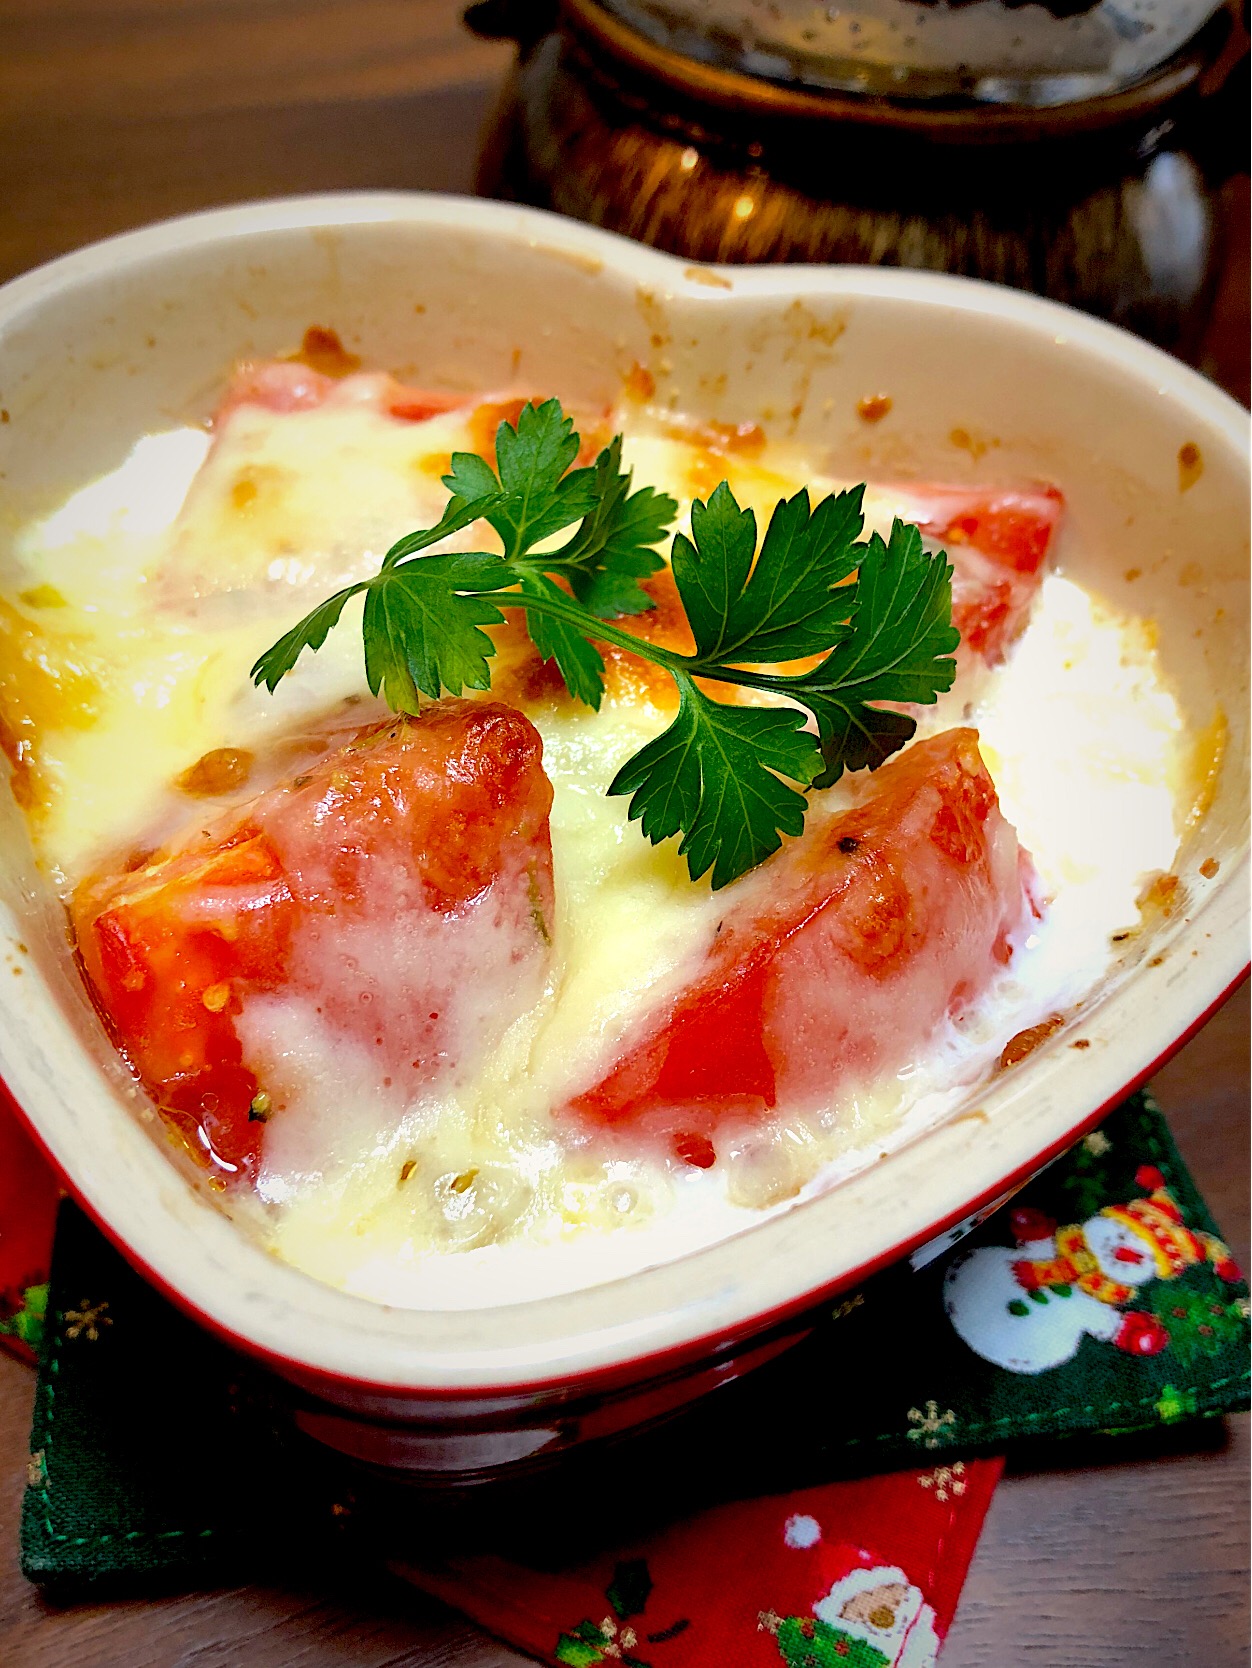 Norikoの料理 トマトココット